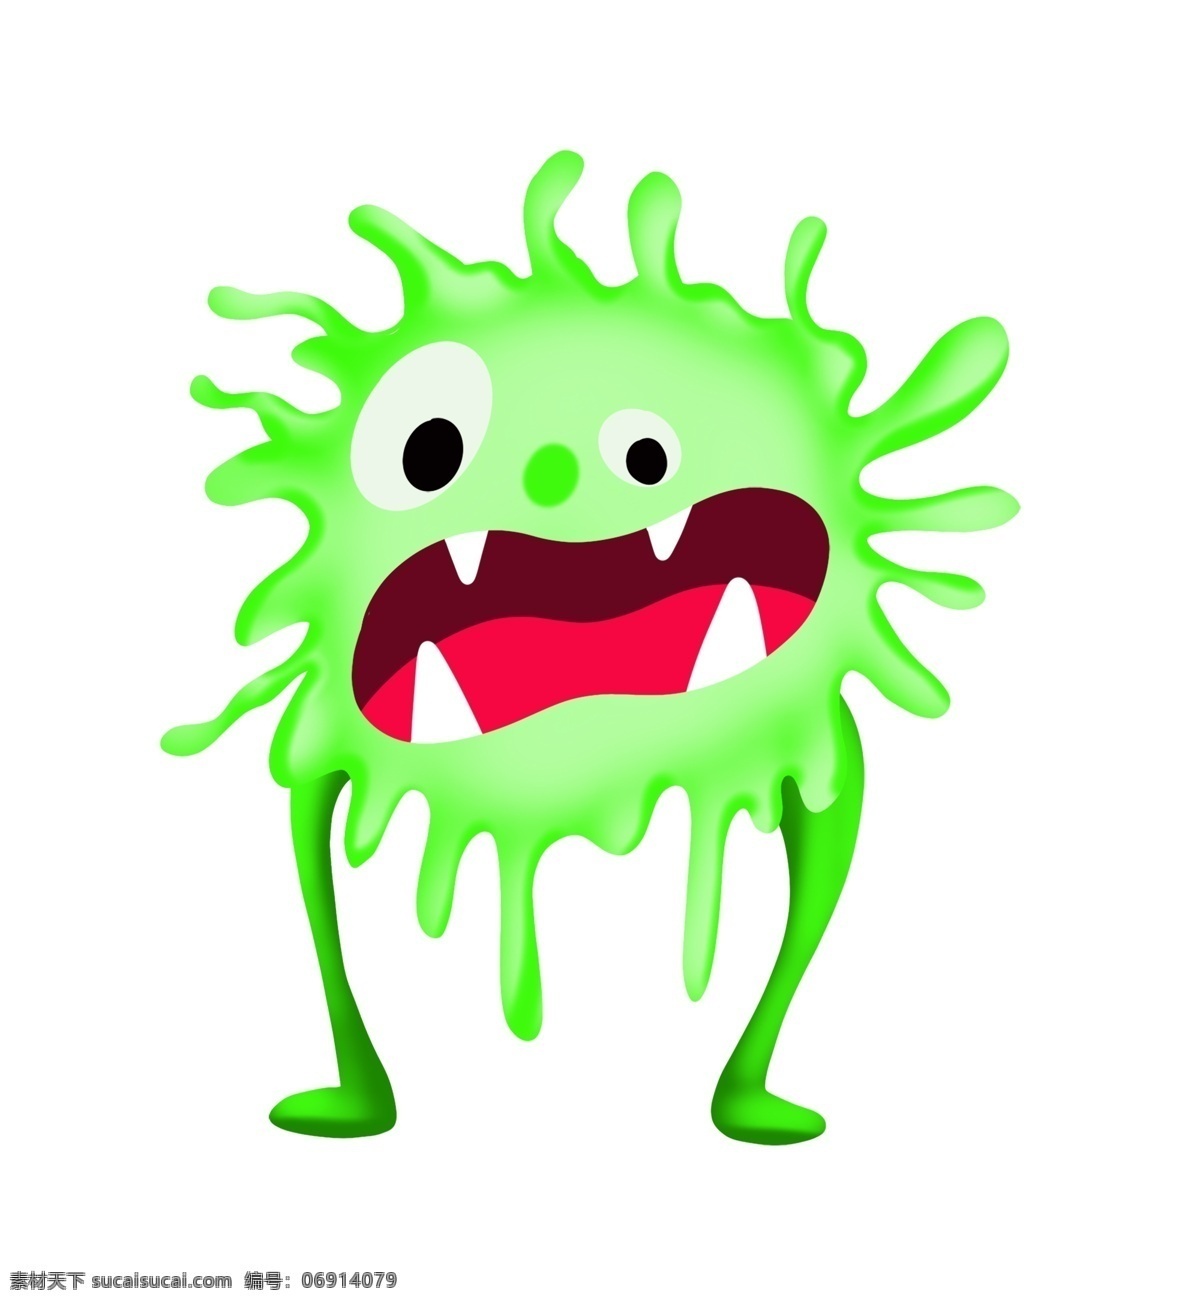 细胞膜 细菌 插画 绿色的细菌 卡通插画 细菌插画 病菌 细胞质 核糖体 单细胞生物